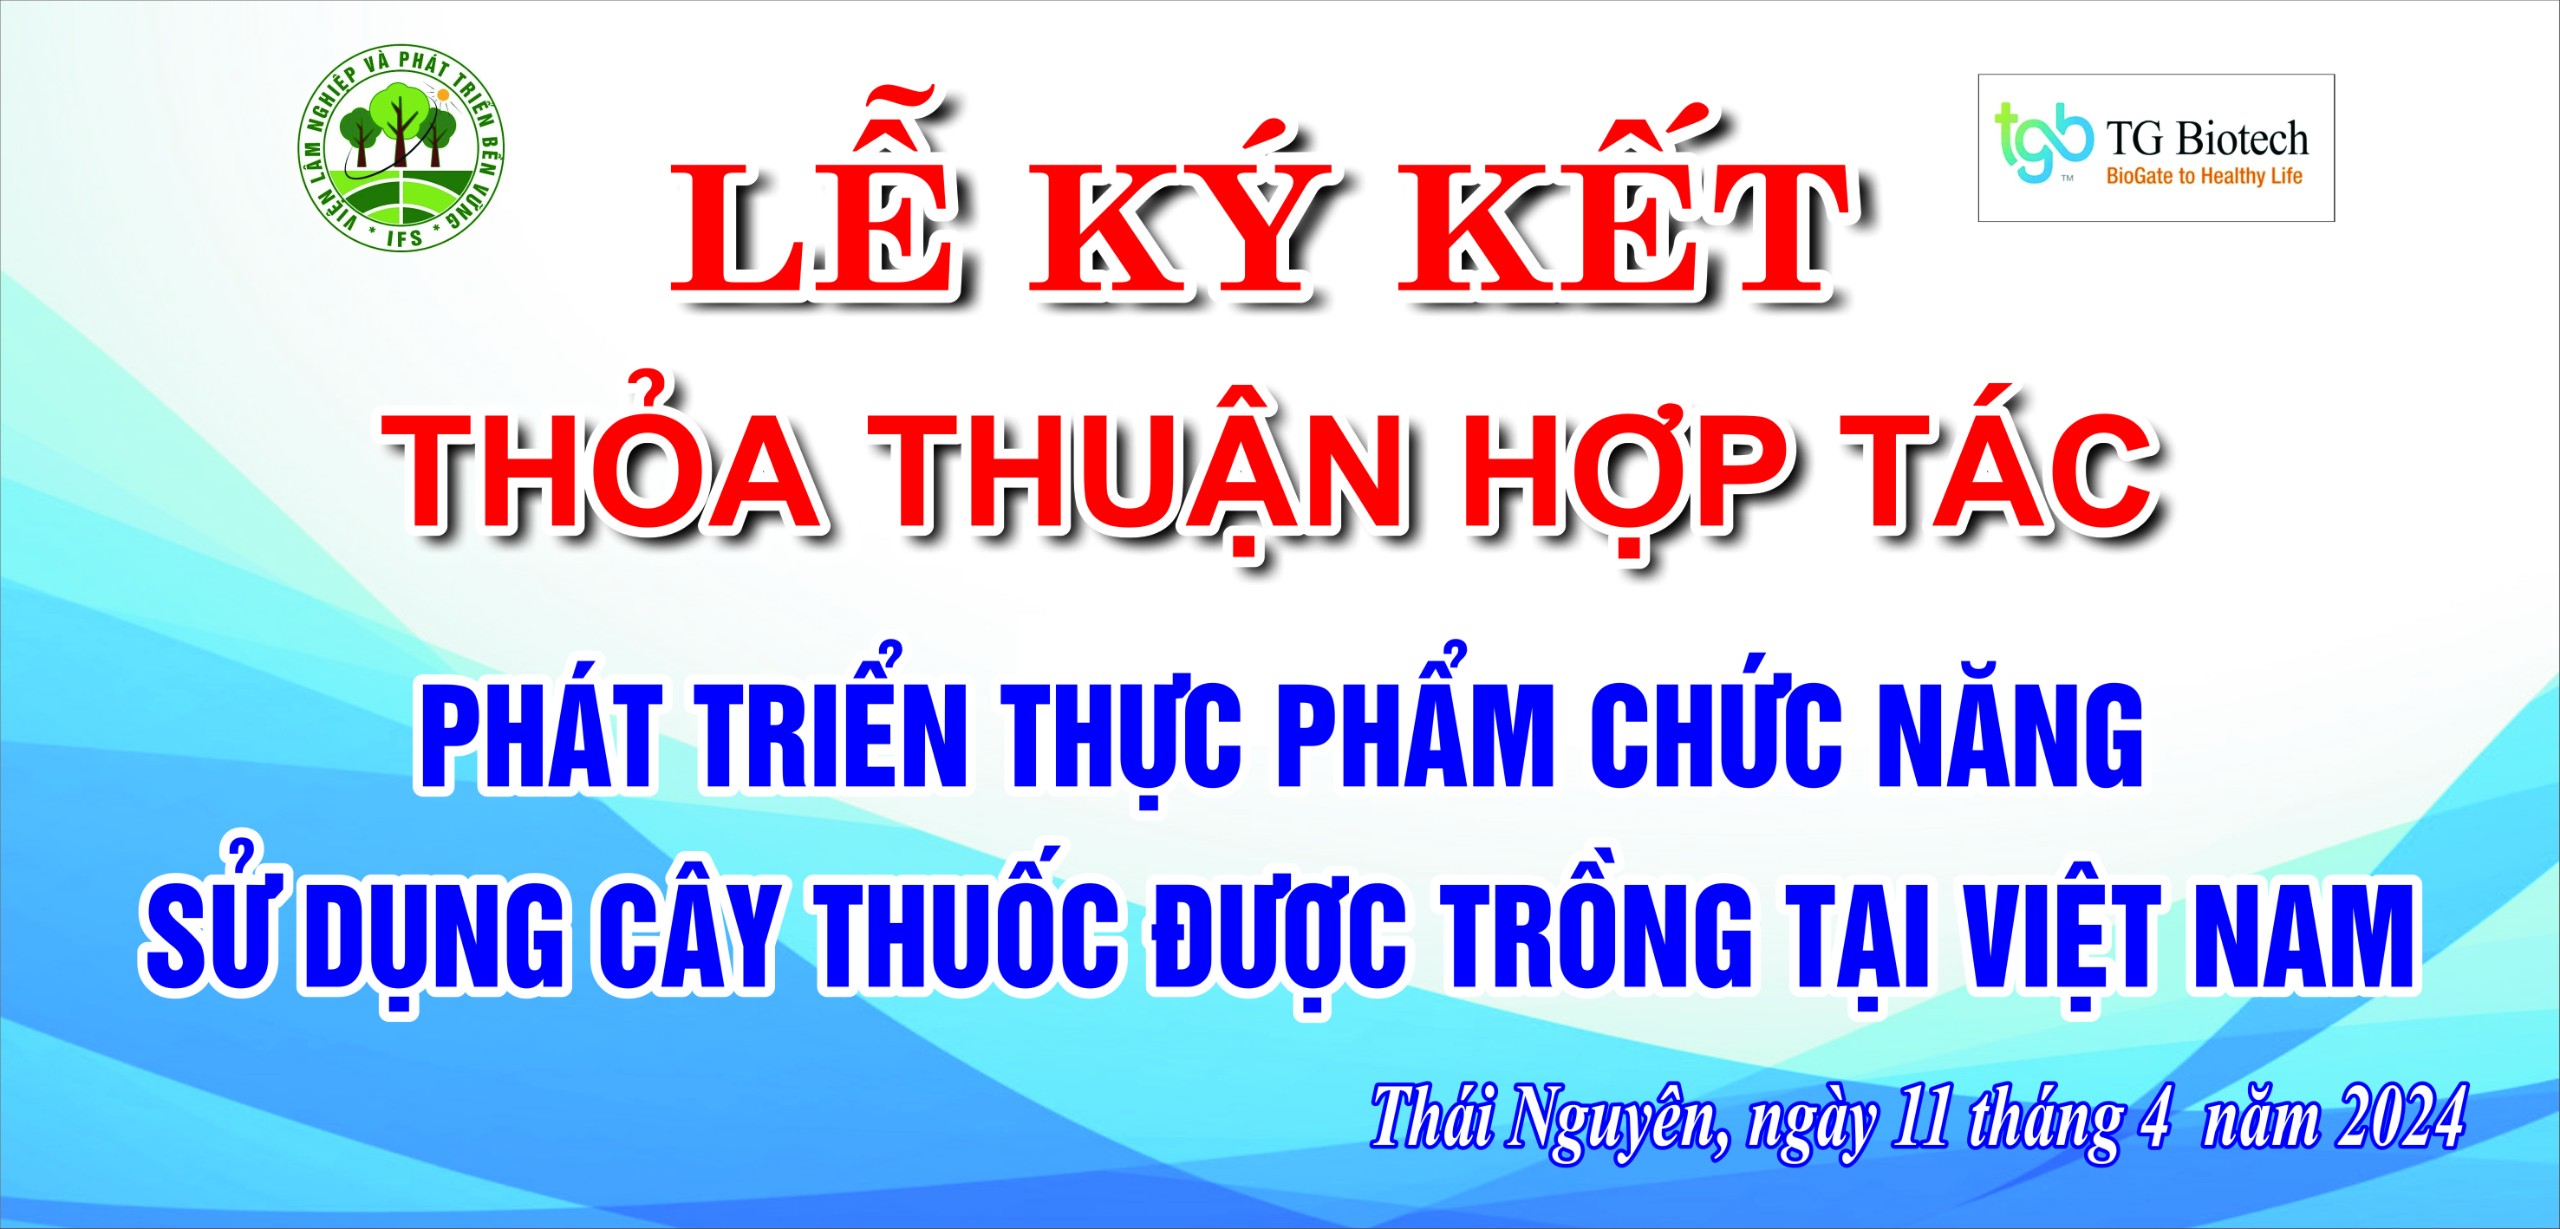 Lễ ký kết thỏa thuận hợp tác trong lĩnh vực phát triển thực phẩm chức năng sử dụng cây thuốc được trồng tại Việt Nam. Giữa Viện Lâm Nghiệp và Công ty TNHH TG Biotech